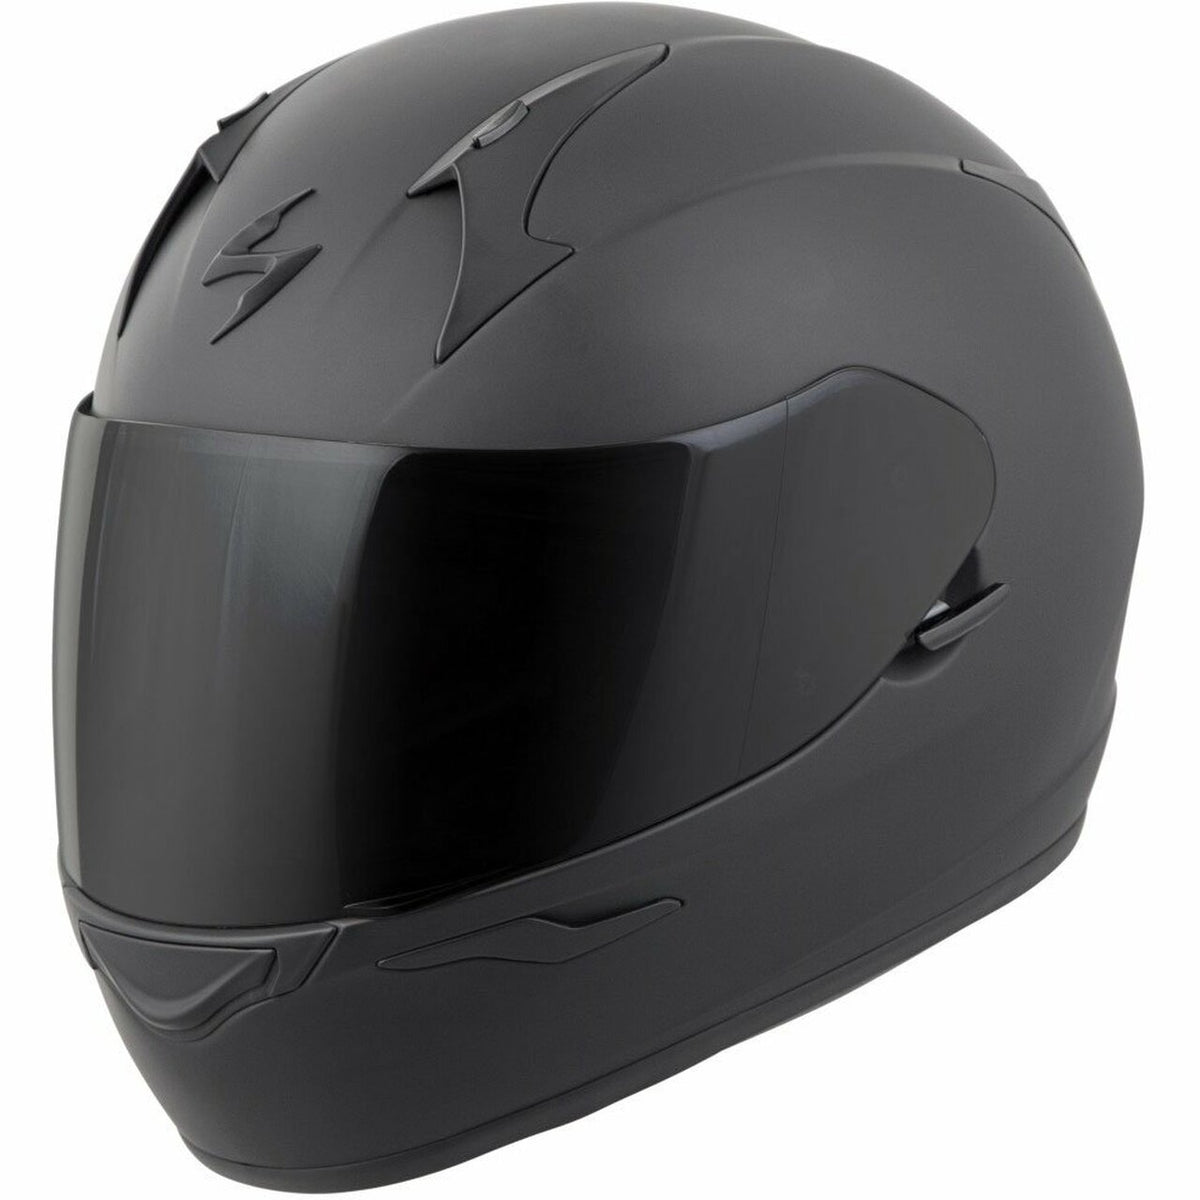 Scorpion EXO-R320 Helmet